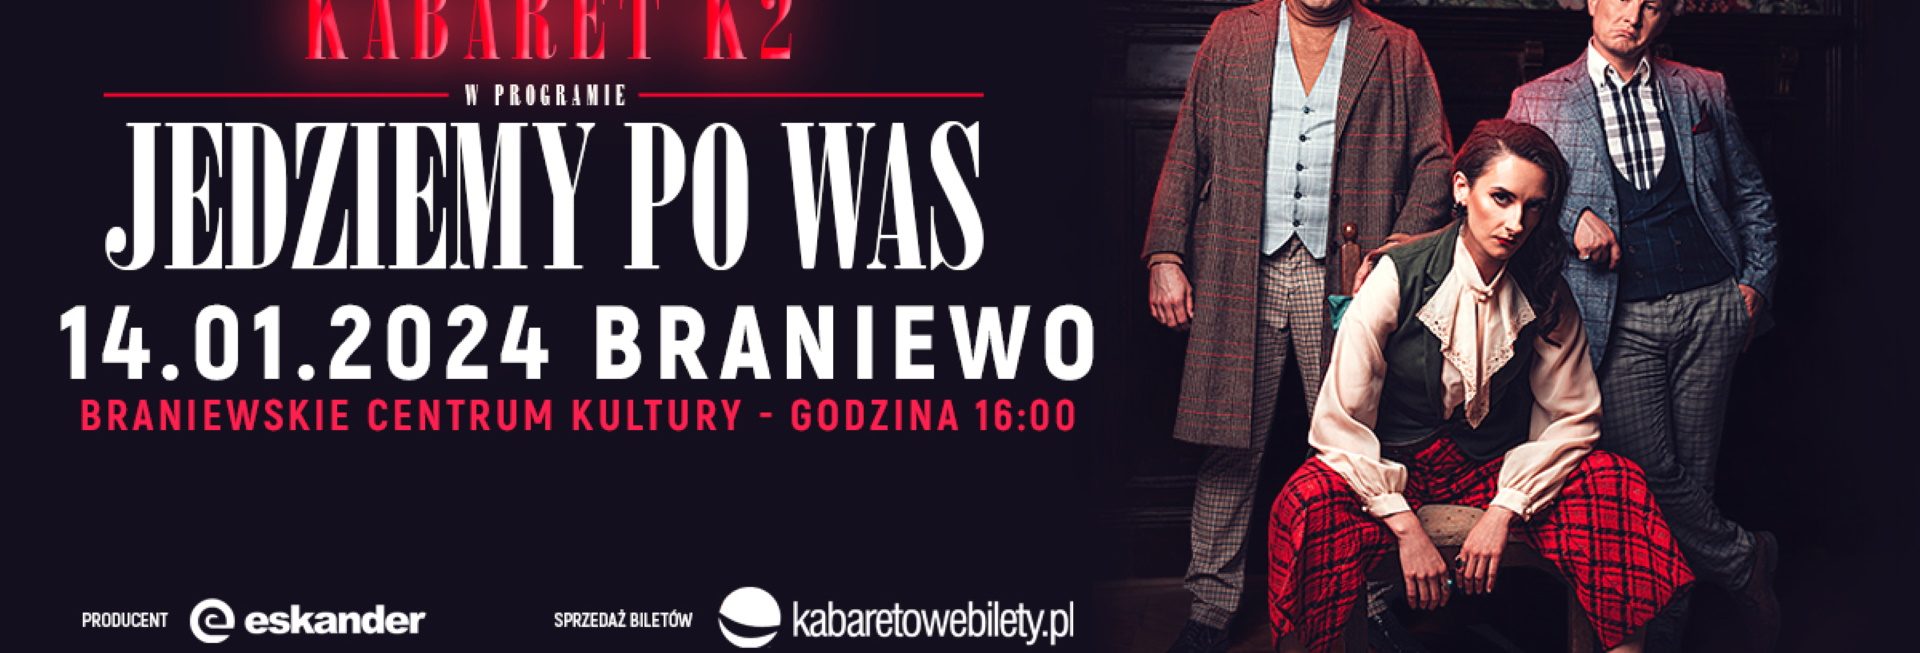 Plakat zapraszający w niedzielę 14 stycznia 2024 r. do Braniewa na występ Kabaretu K2 „Jedziemy po Was” Braniewo 2024.